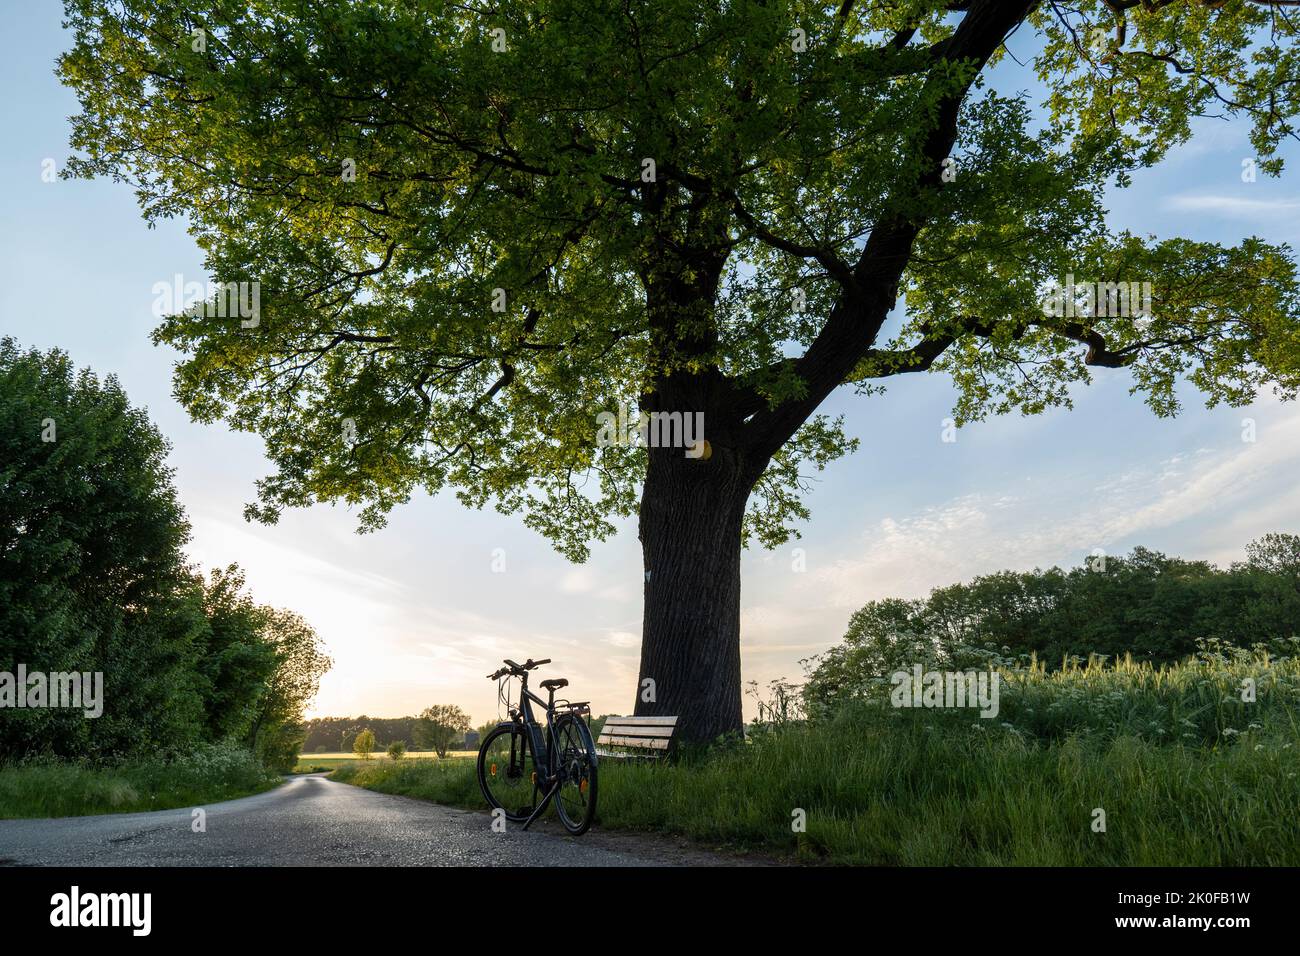 Monumento natural pedunculate roble 'Snetbrink' con bicicleta y banco cerca de Petershagen Foto de stock